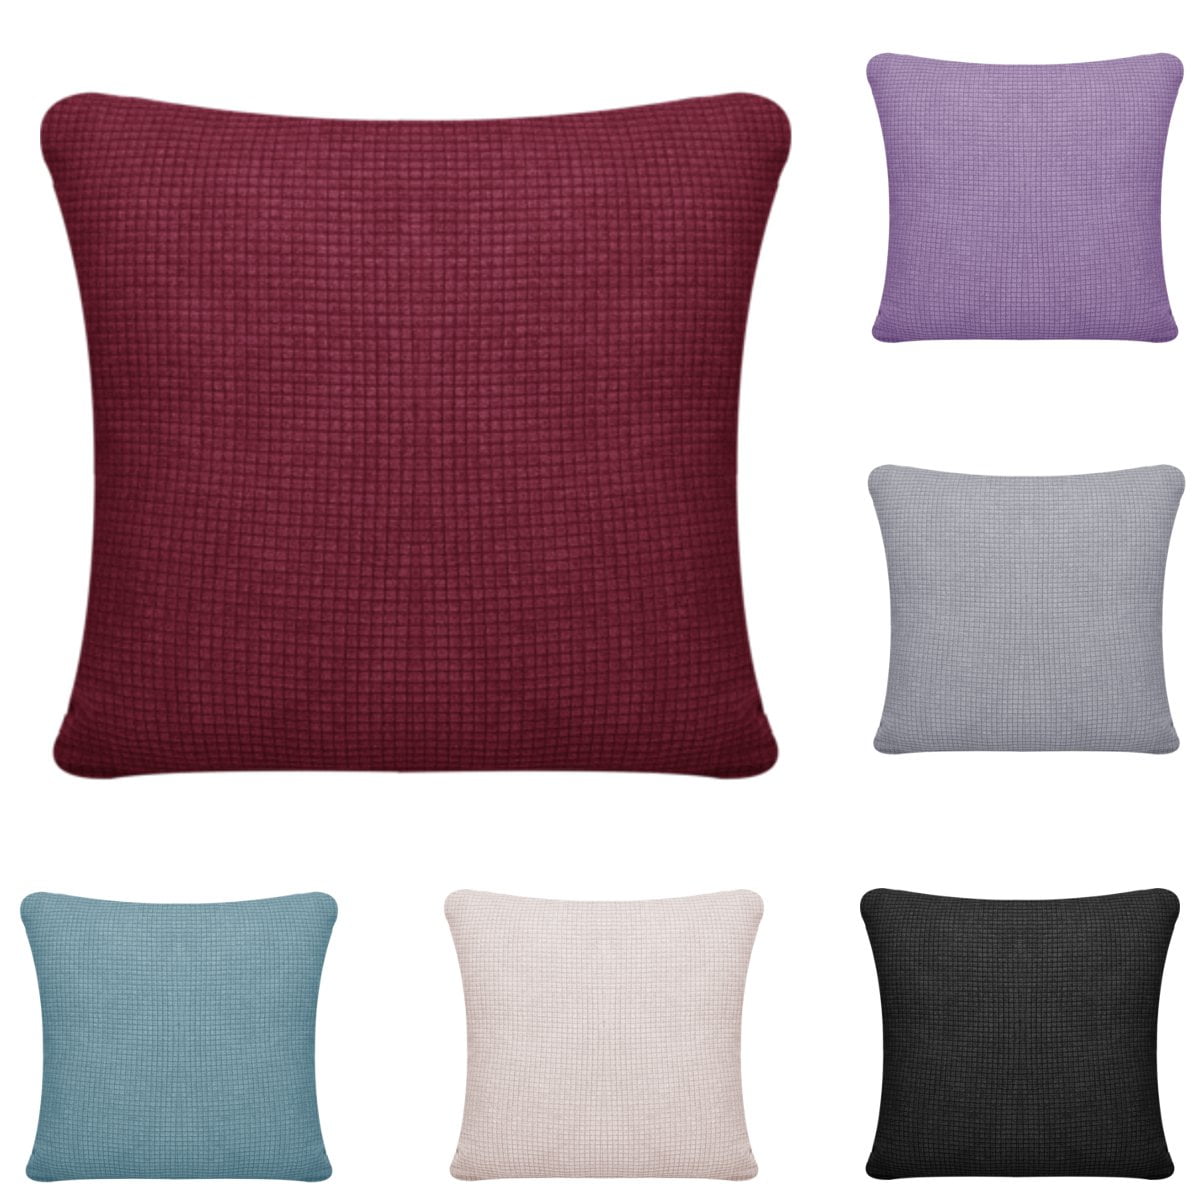 18'' Pillowcase purple pillow case sofa waist throw cushion cover Home Decor